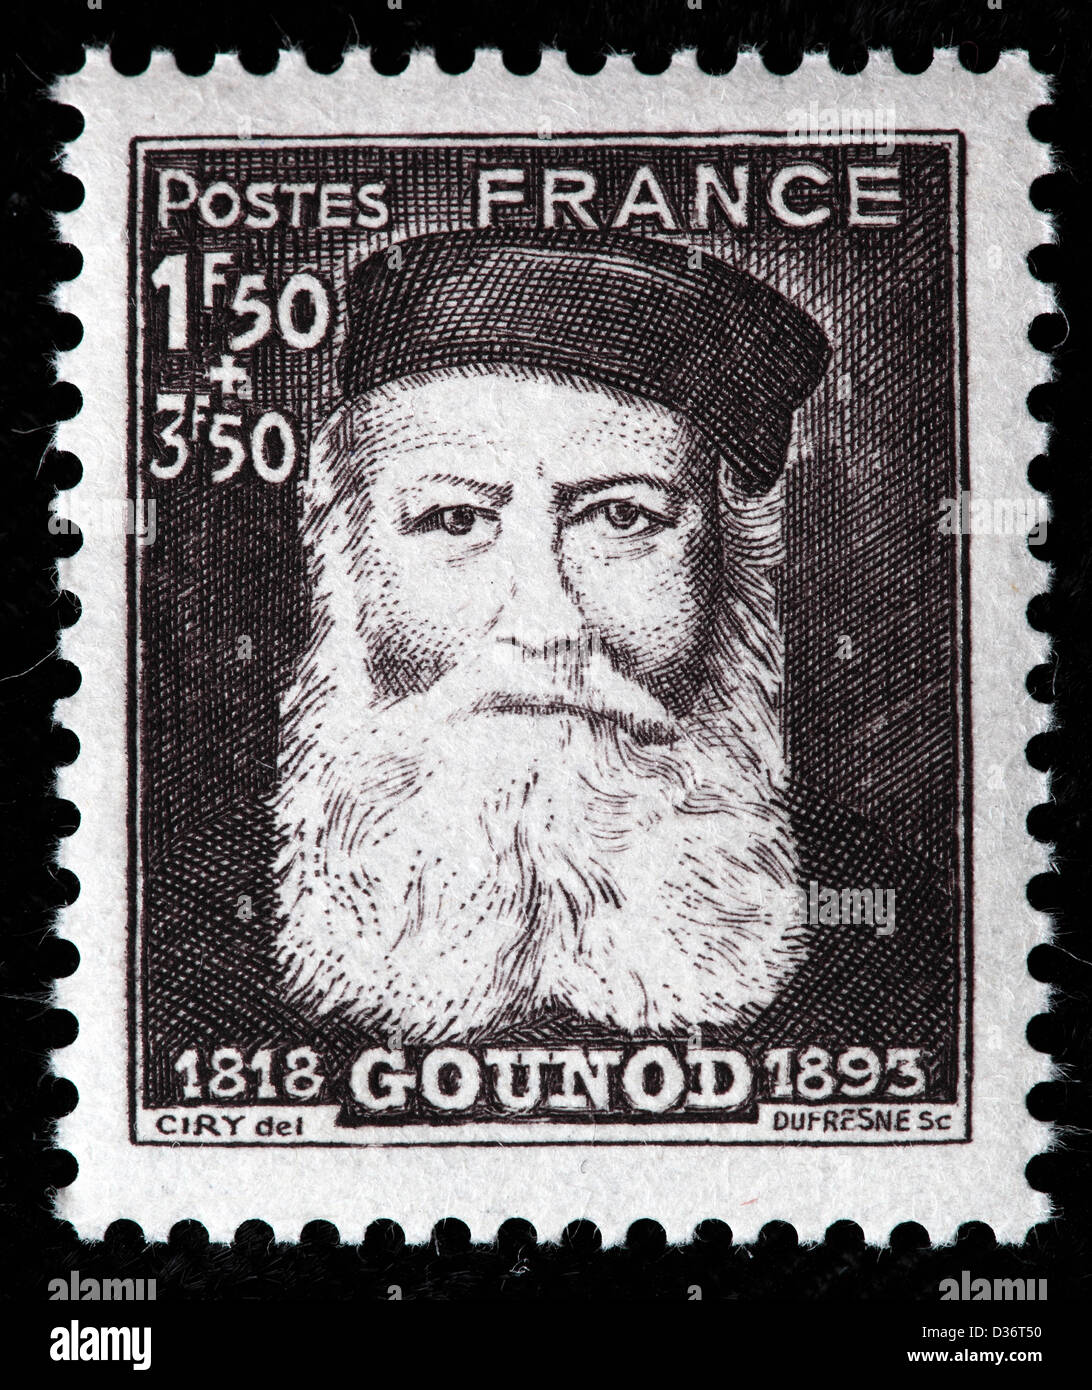 Gounod, compositore, francobollo, Francia, 1944 Foto Stock